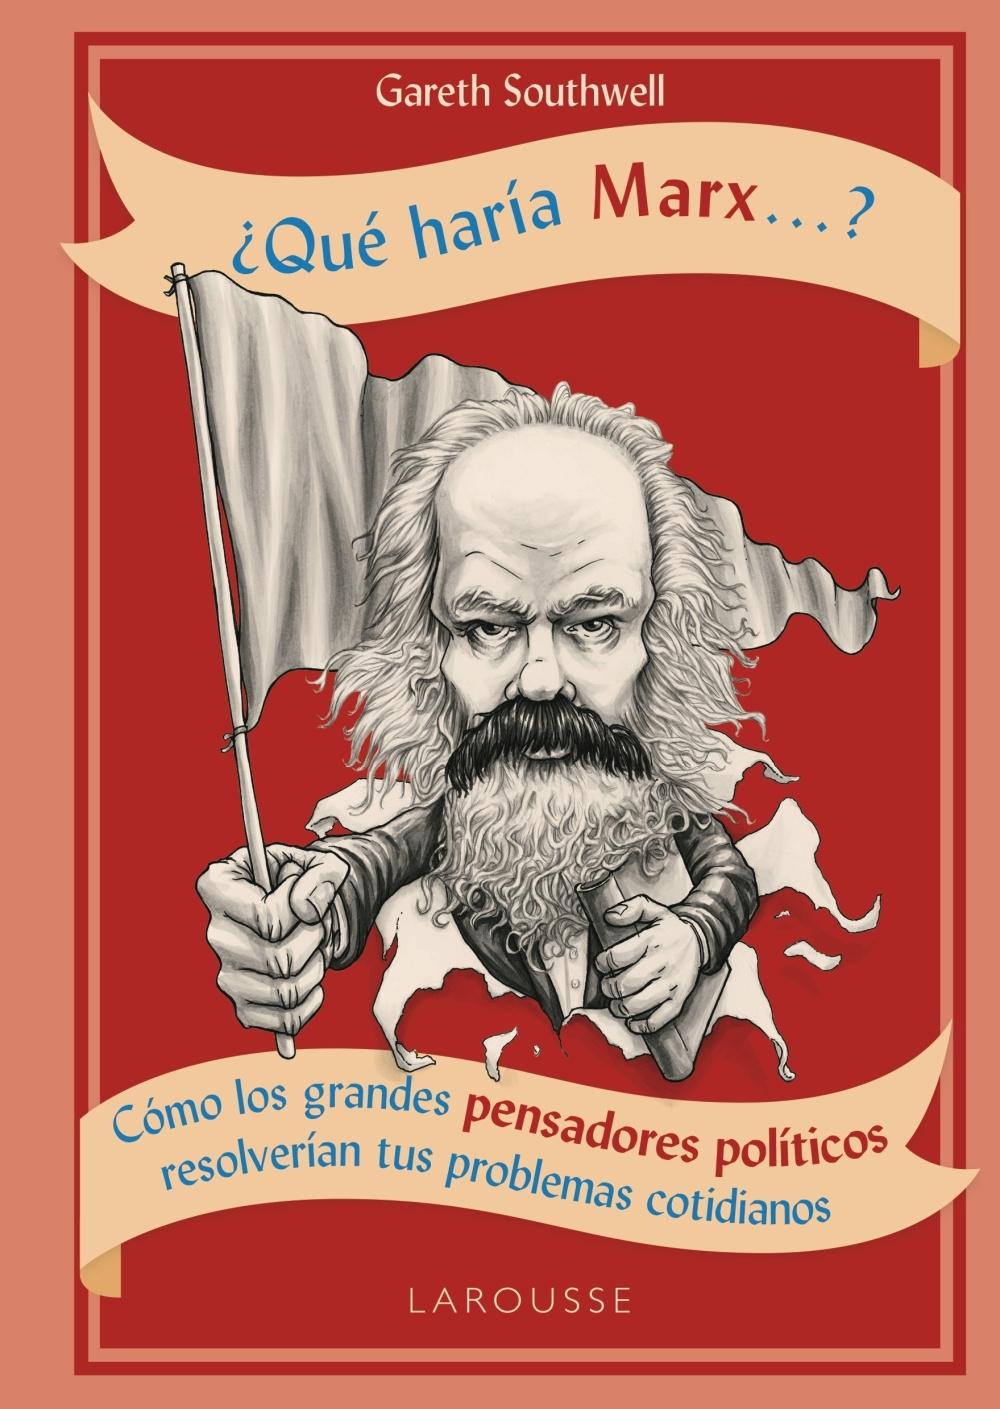 ¿Qué haría Marx...? "Cómo los grandes pensadores políticos resolverían tus problemas cotidianos"